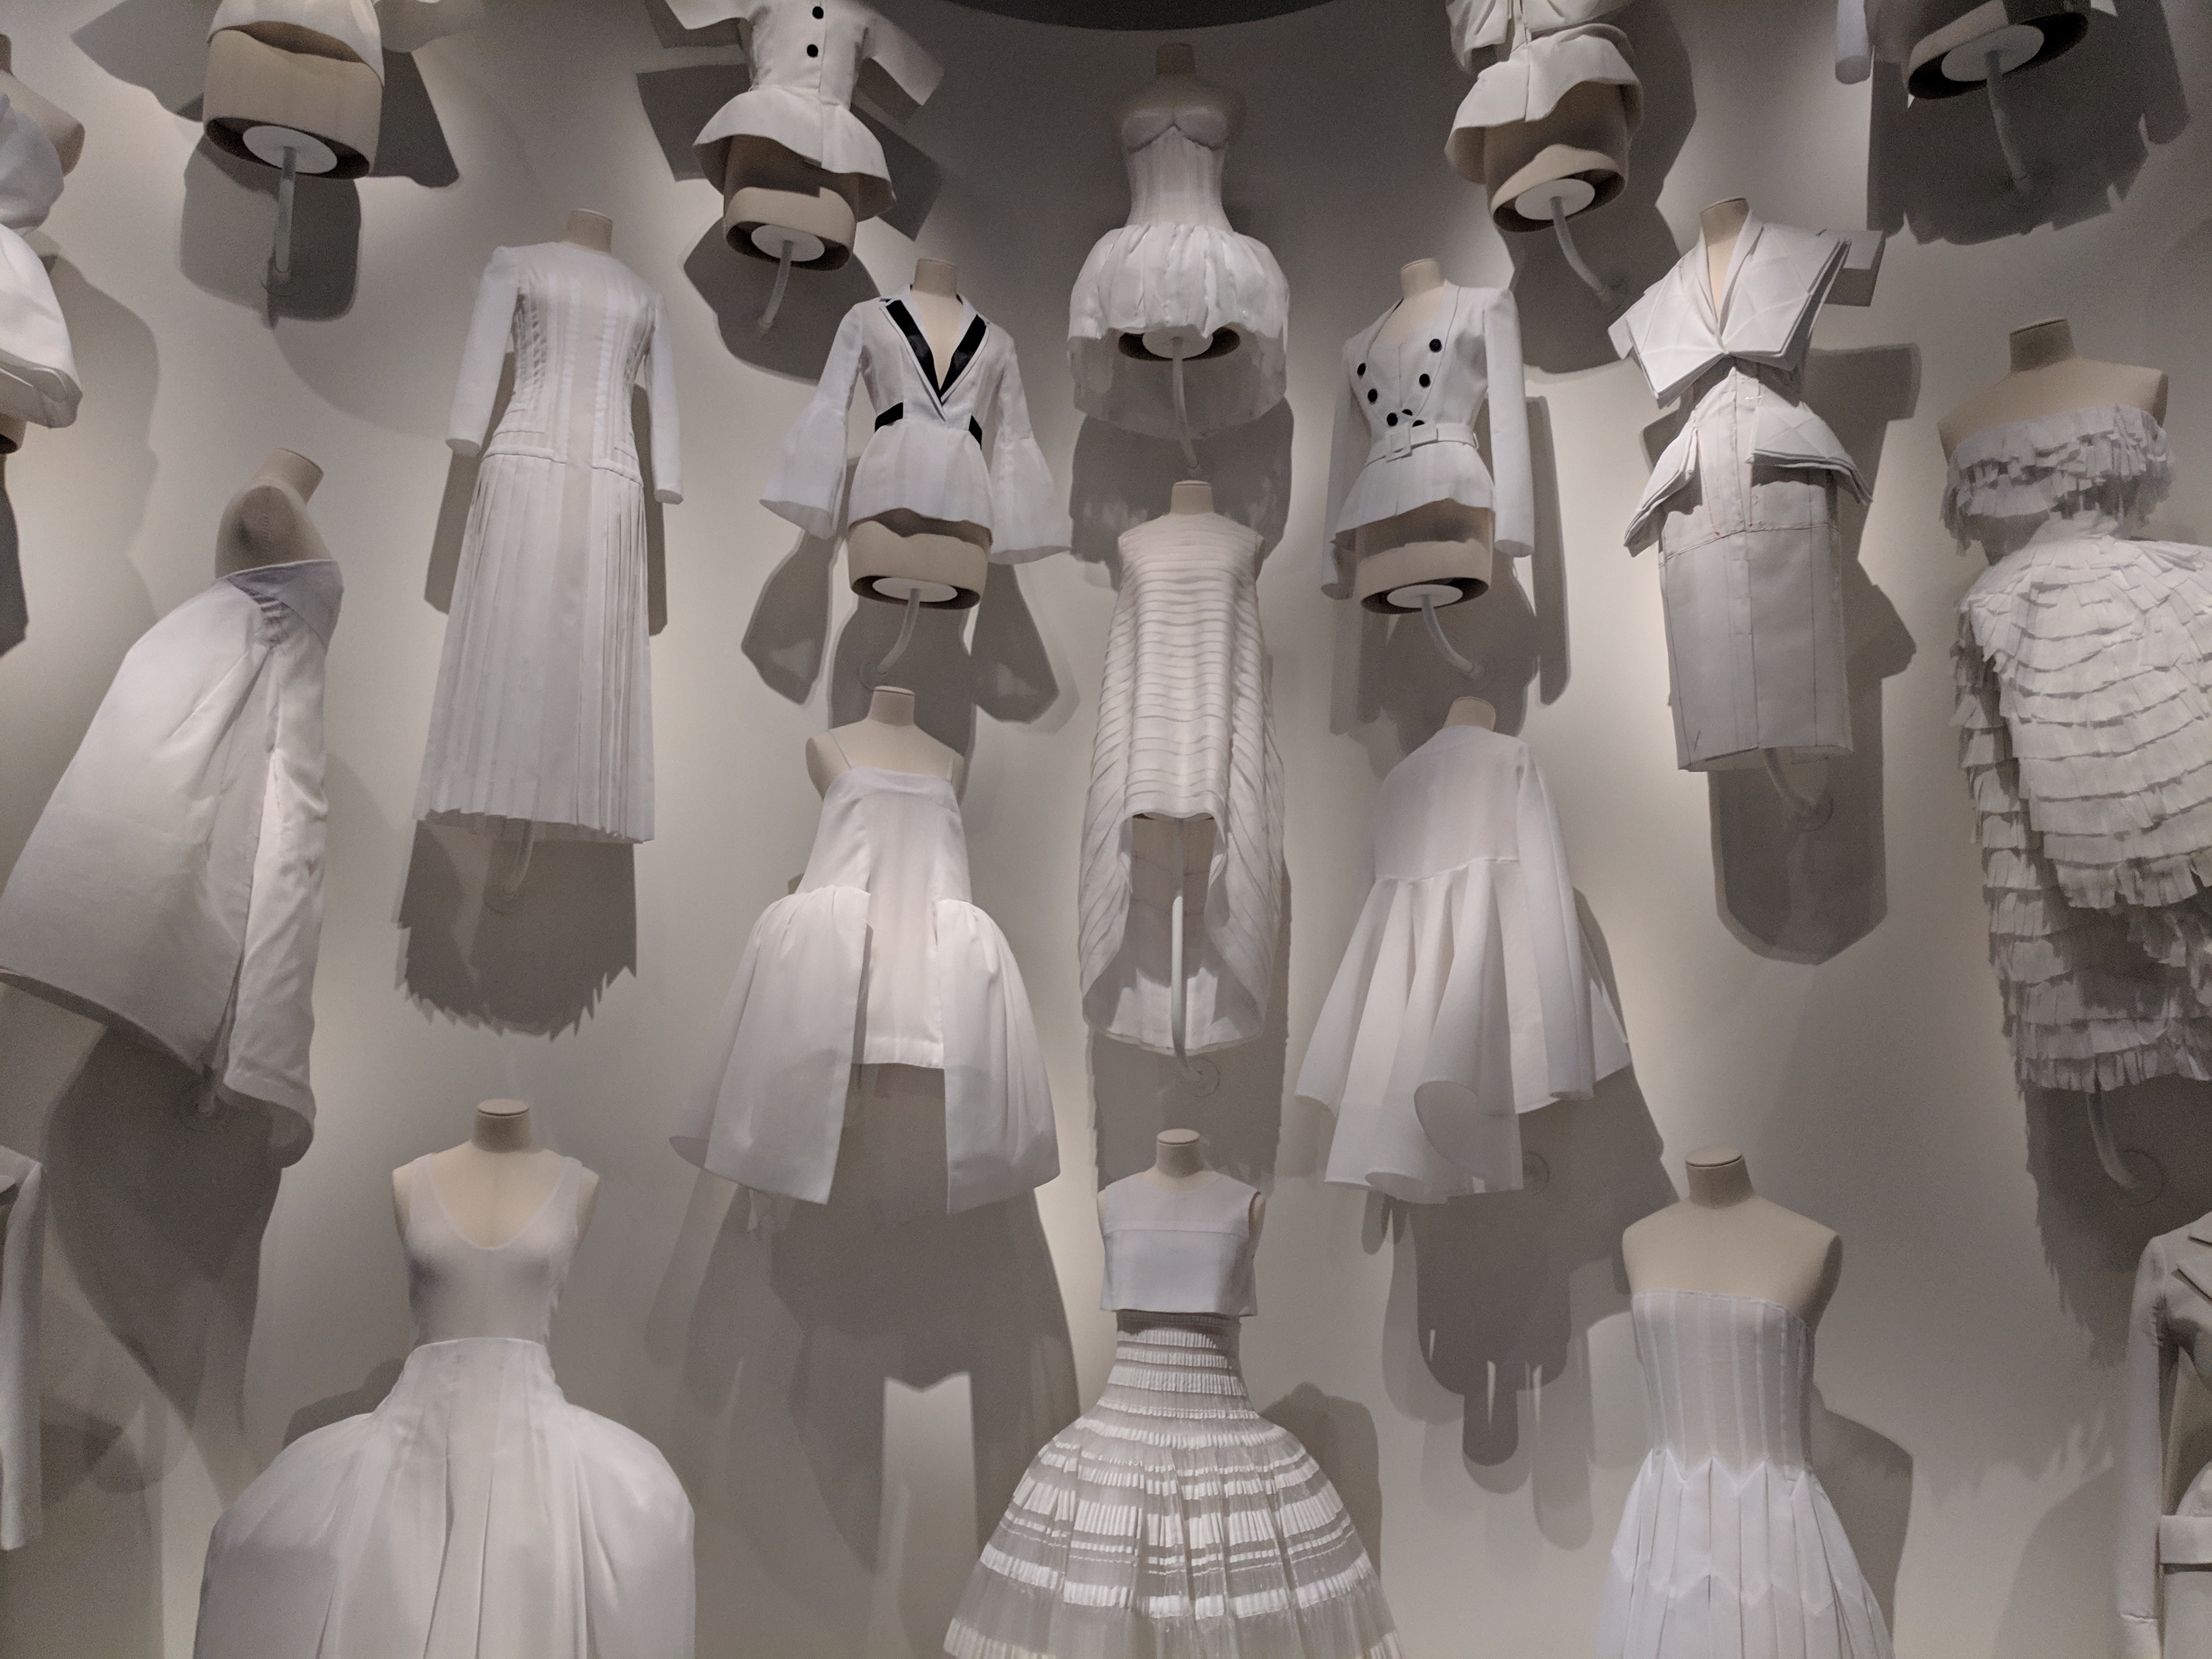 Retrospective: John Galliano's Most Memorable Dior Designs